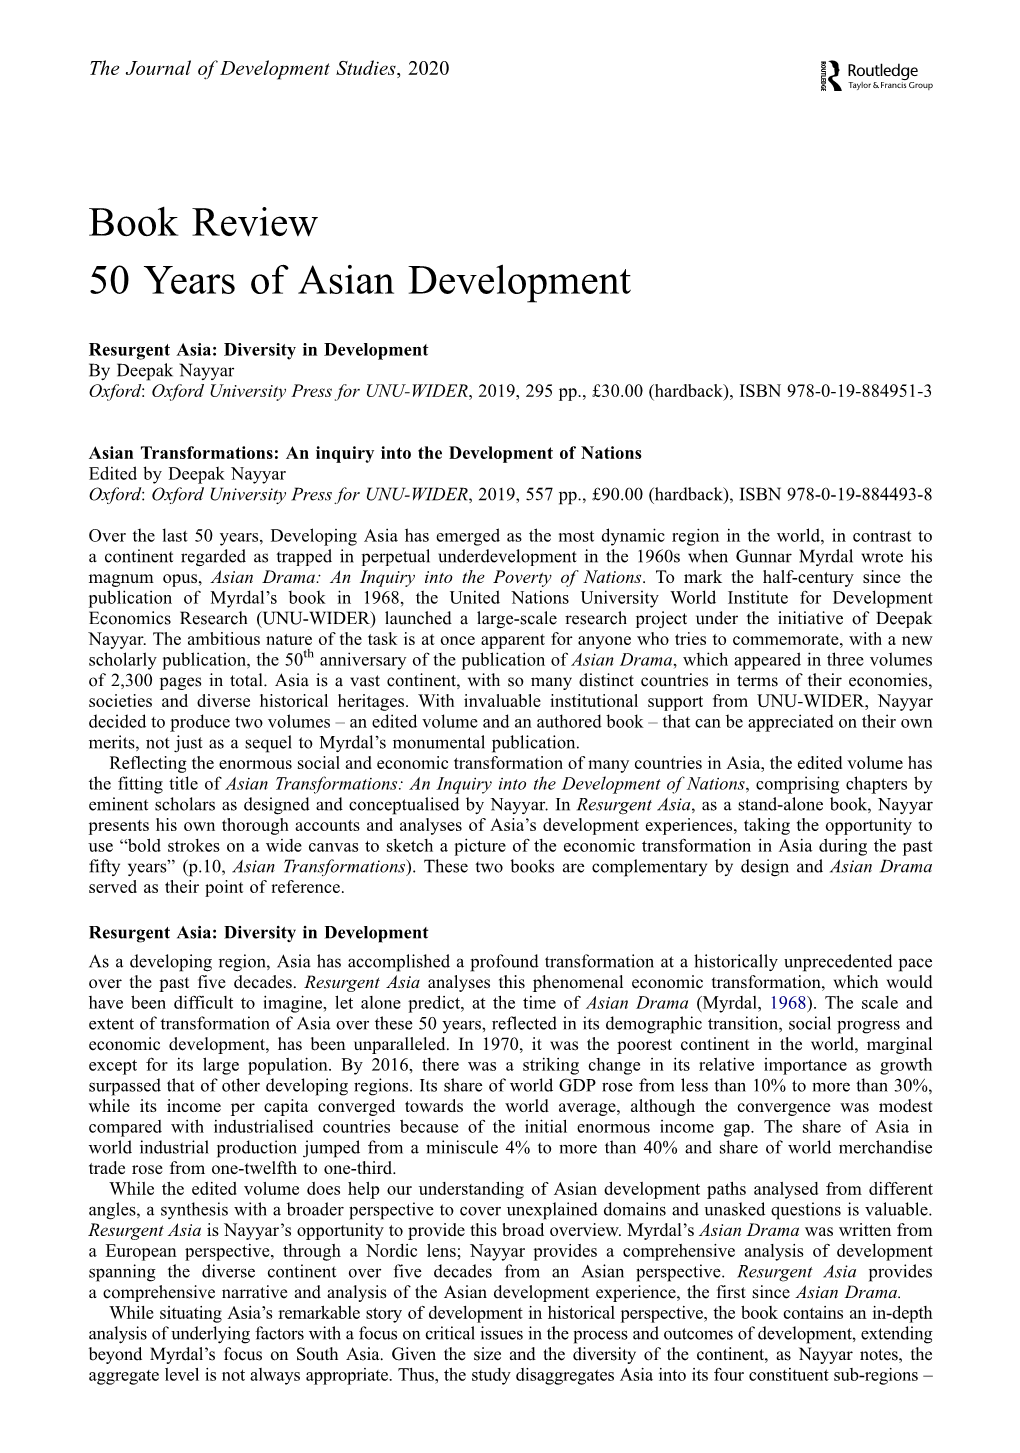 50 Years of Asian Development